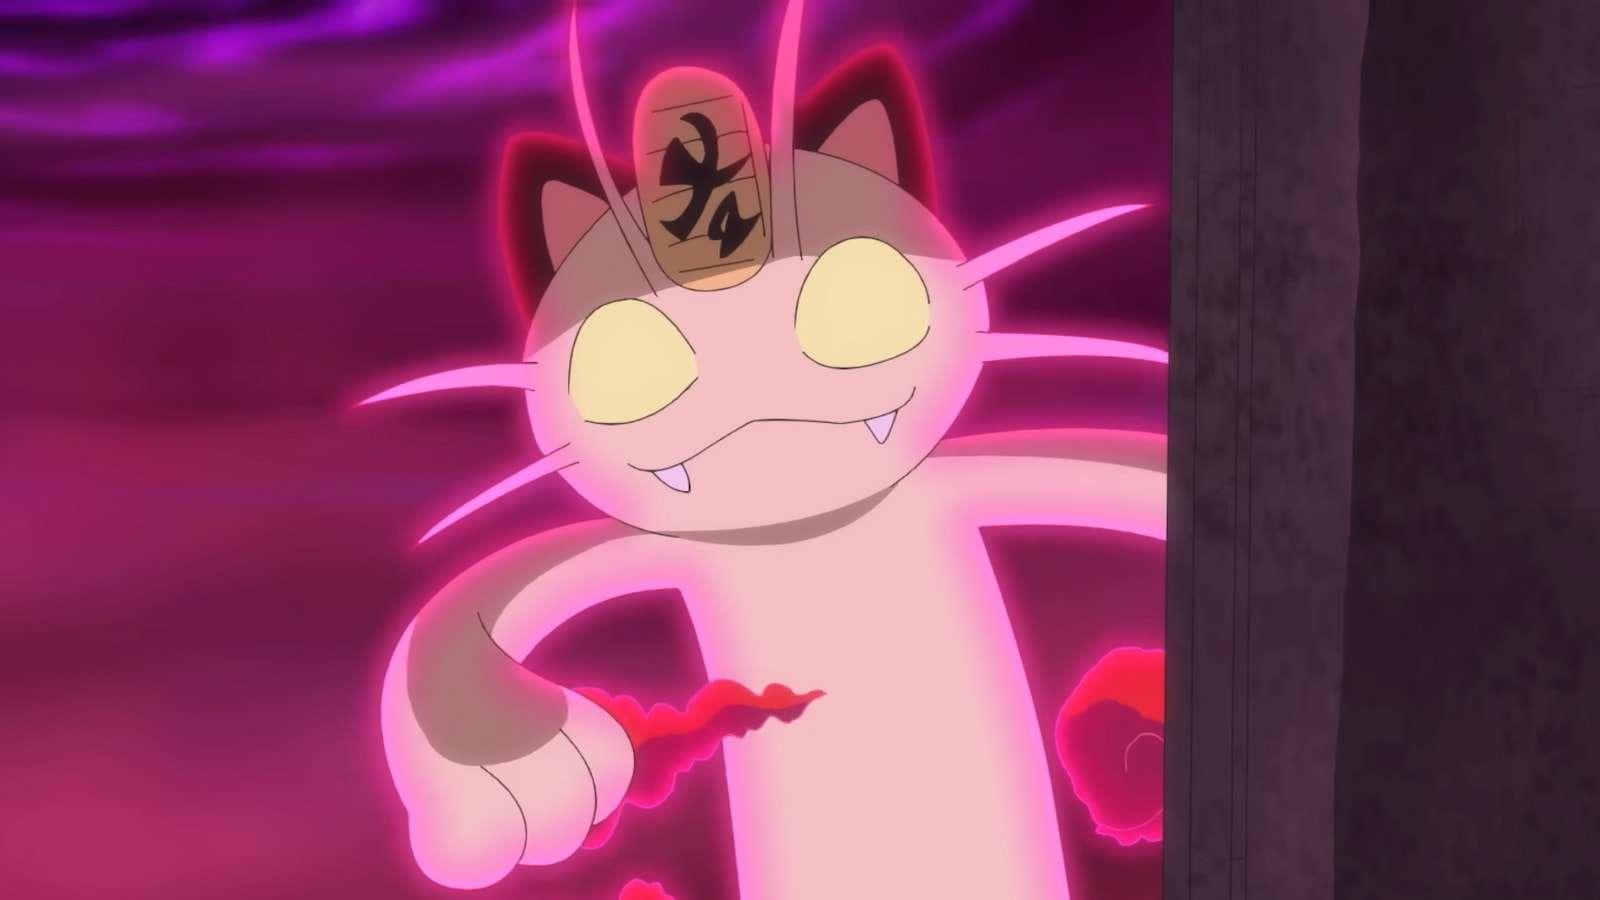 Gigantamax Meowth in the Pokemon anime